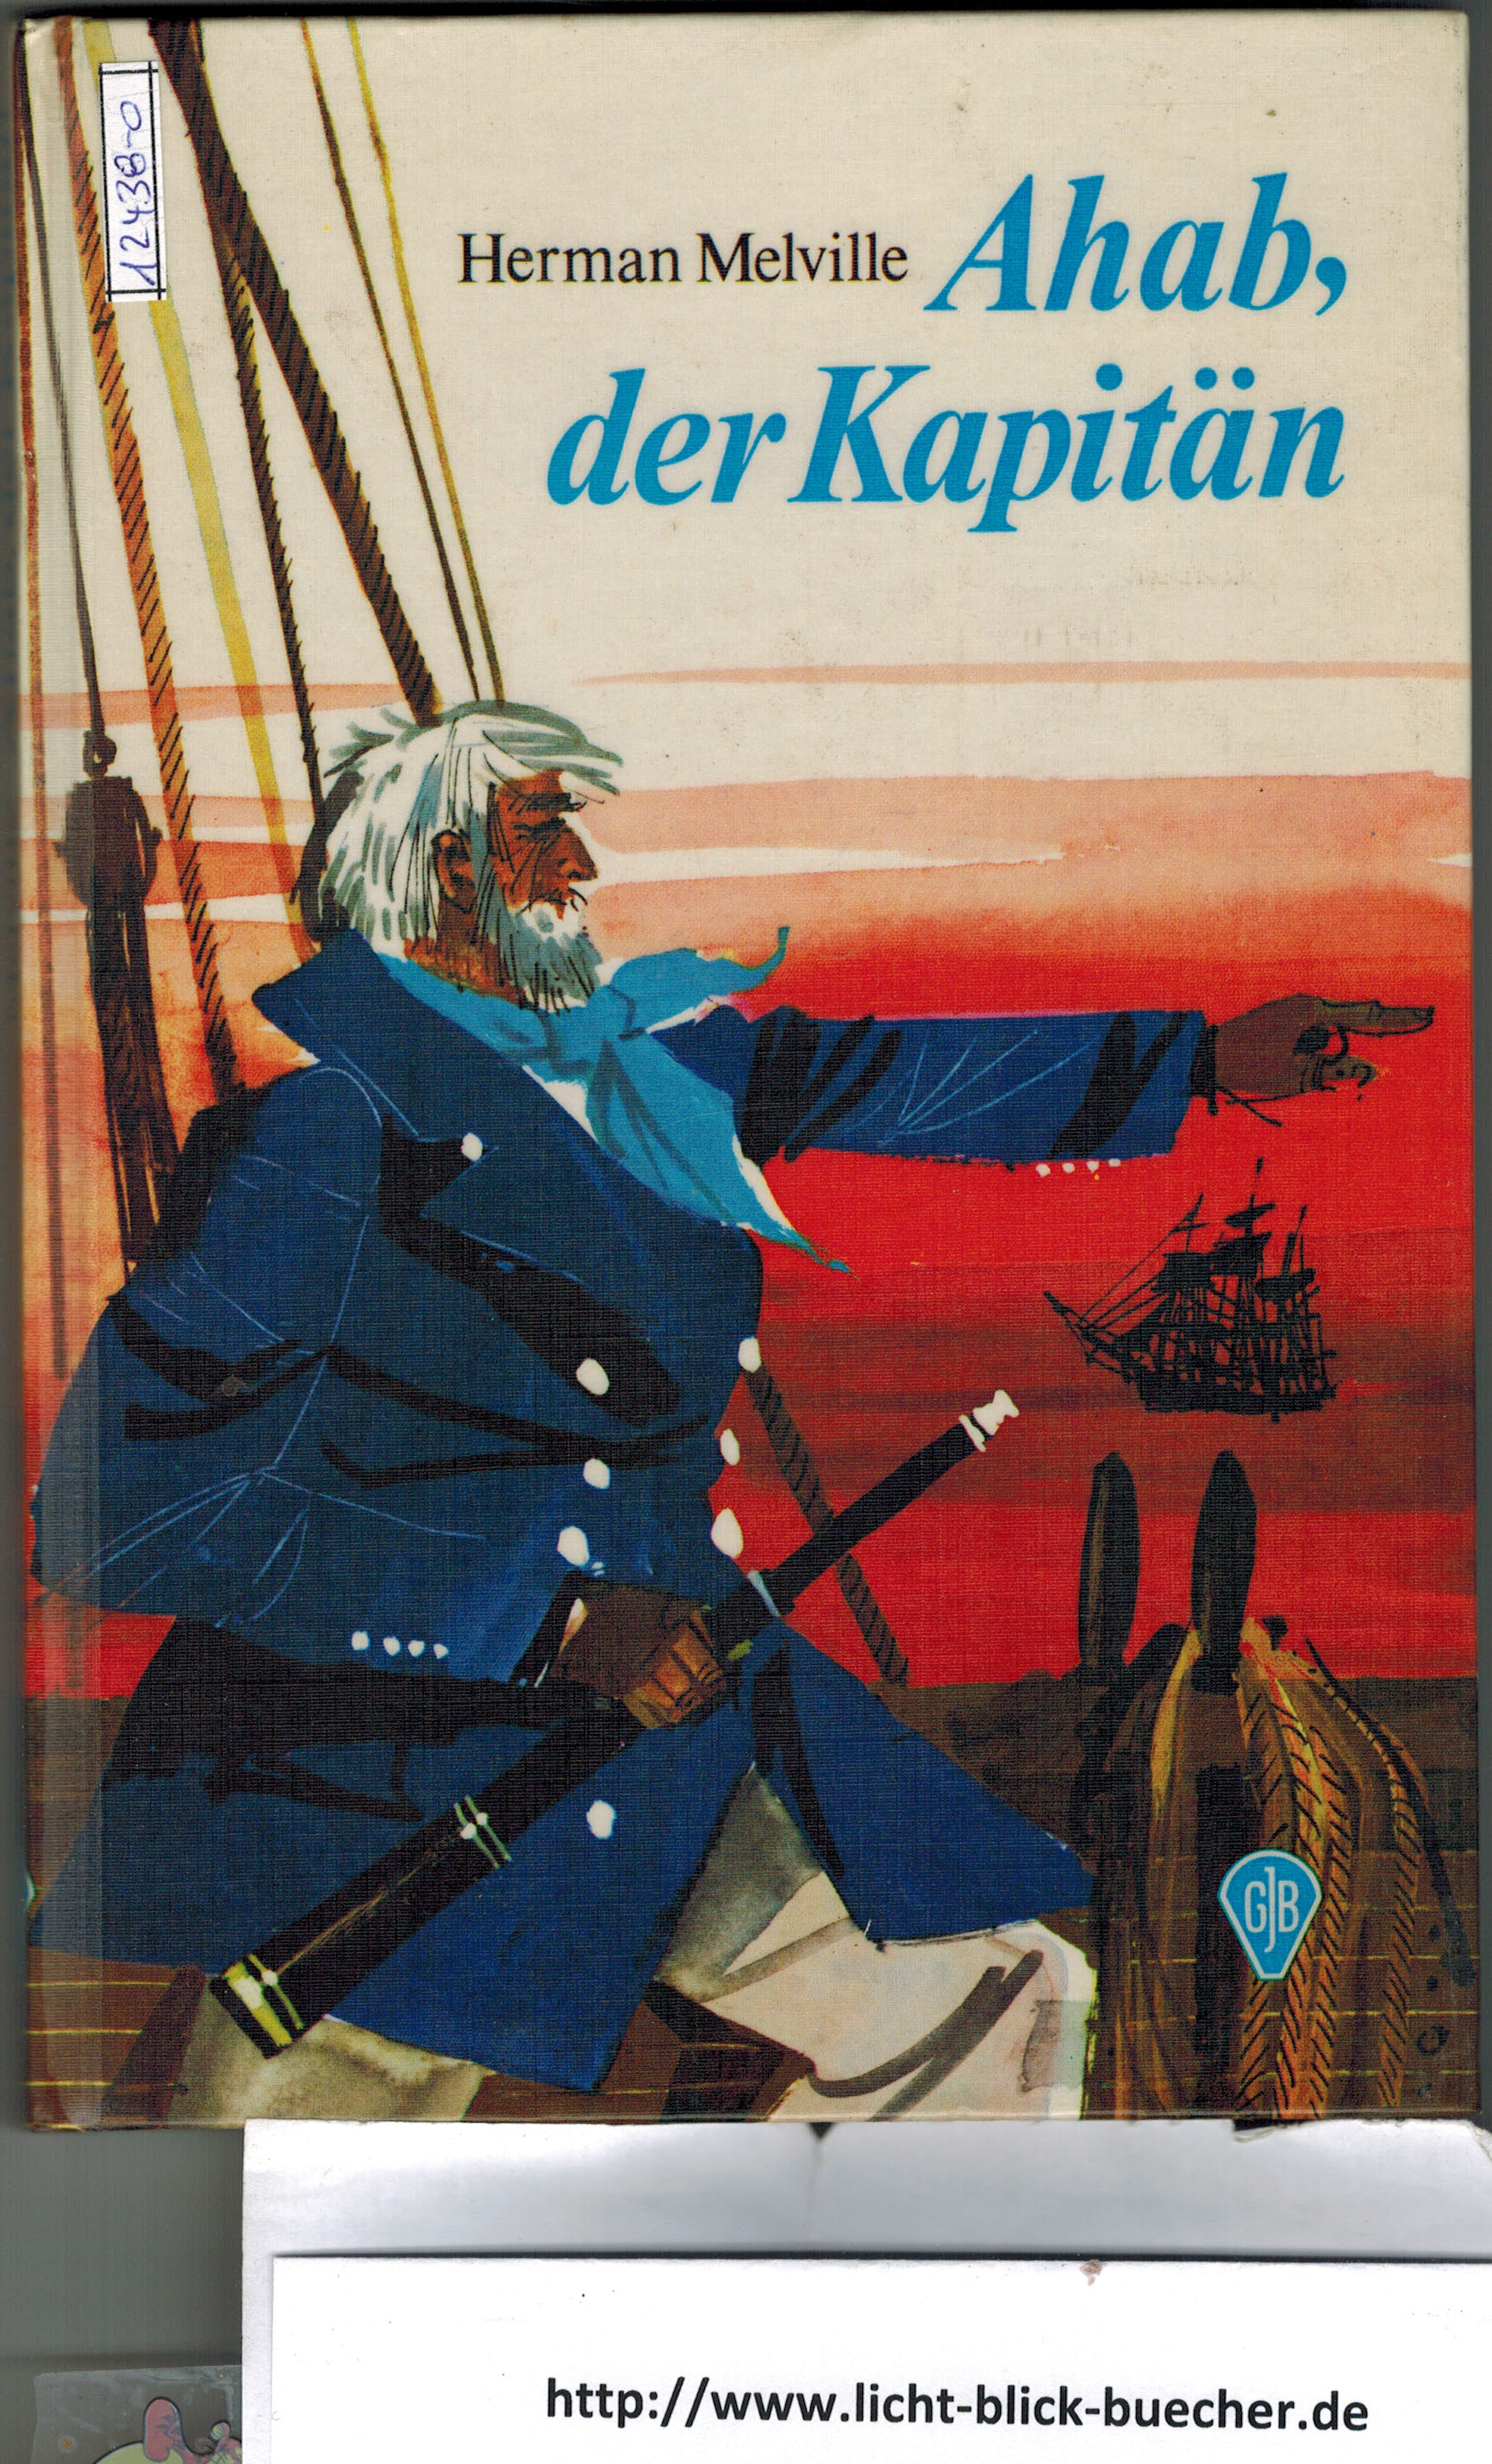 Ahab, der KapitaenHerman Melville